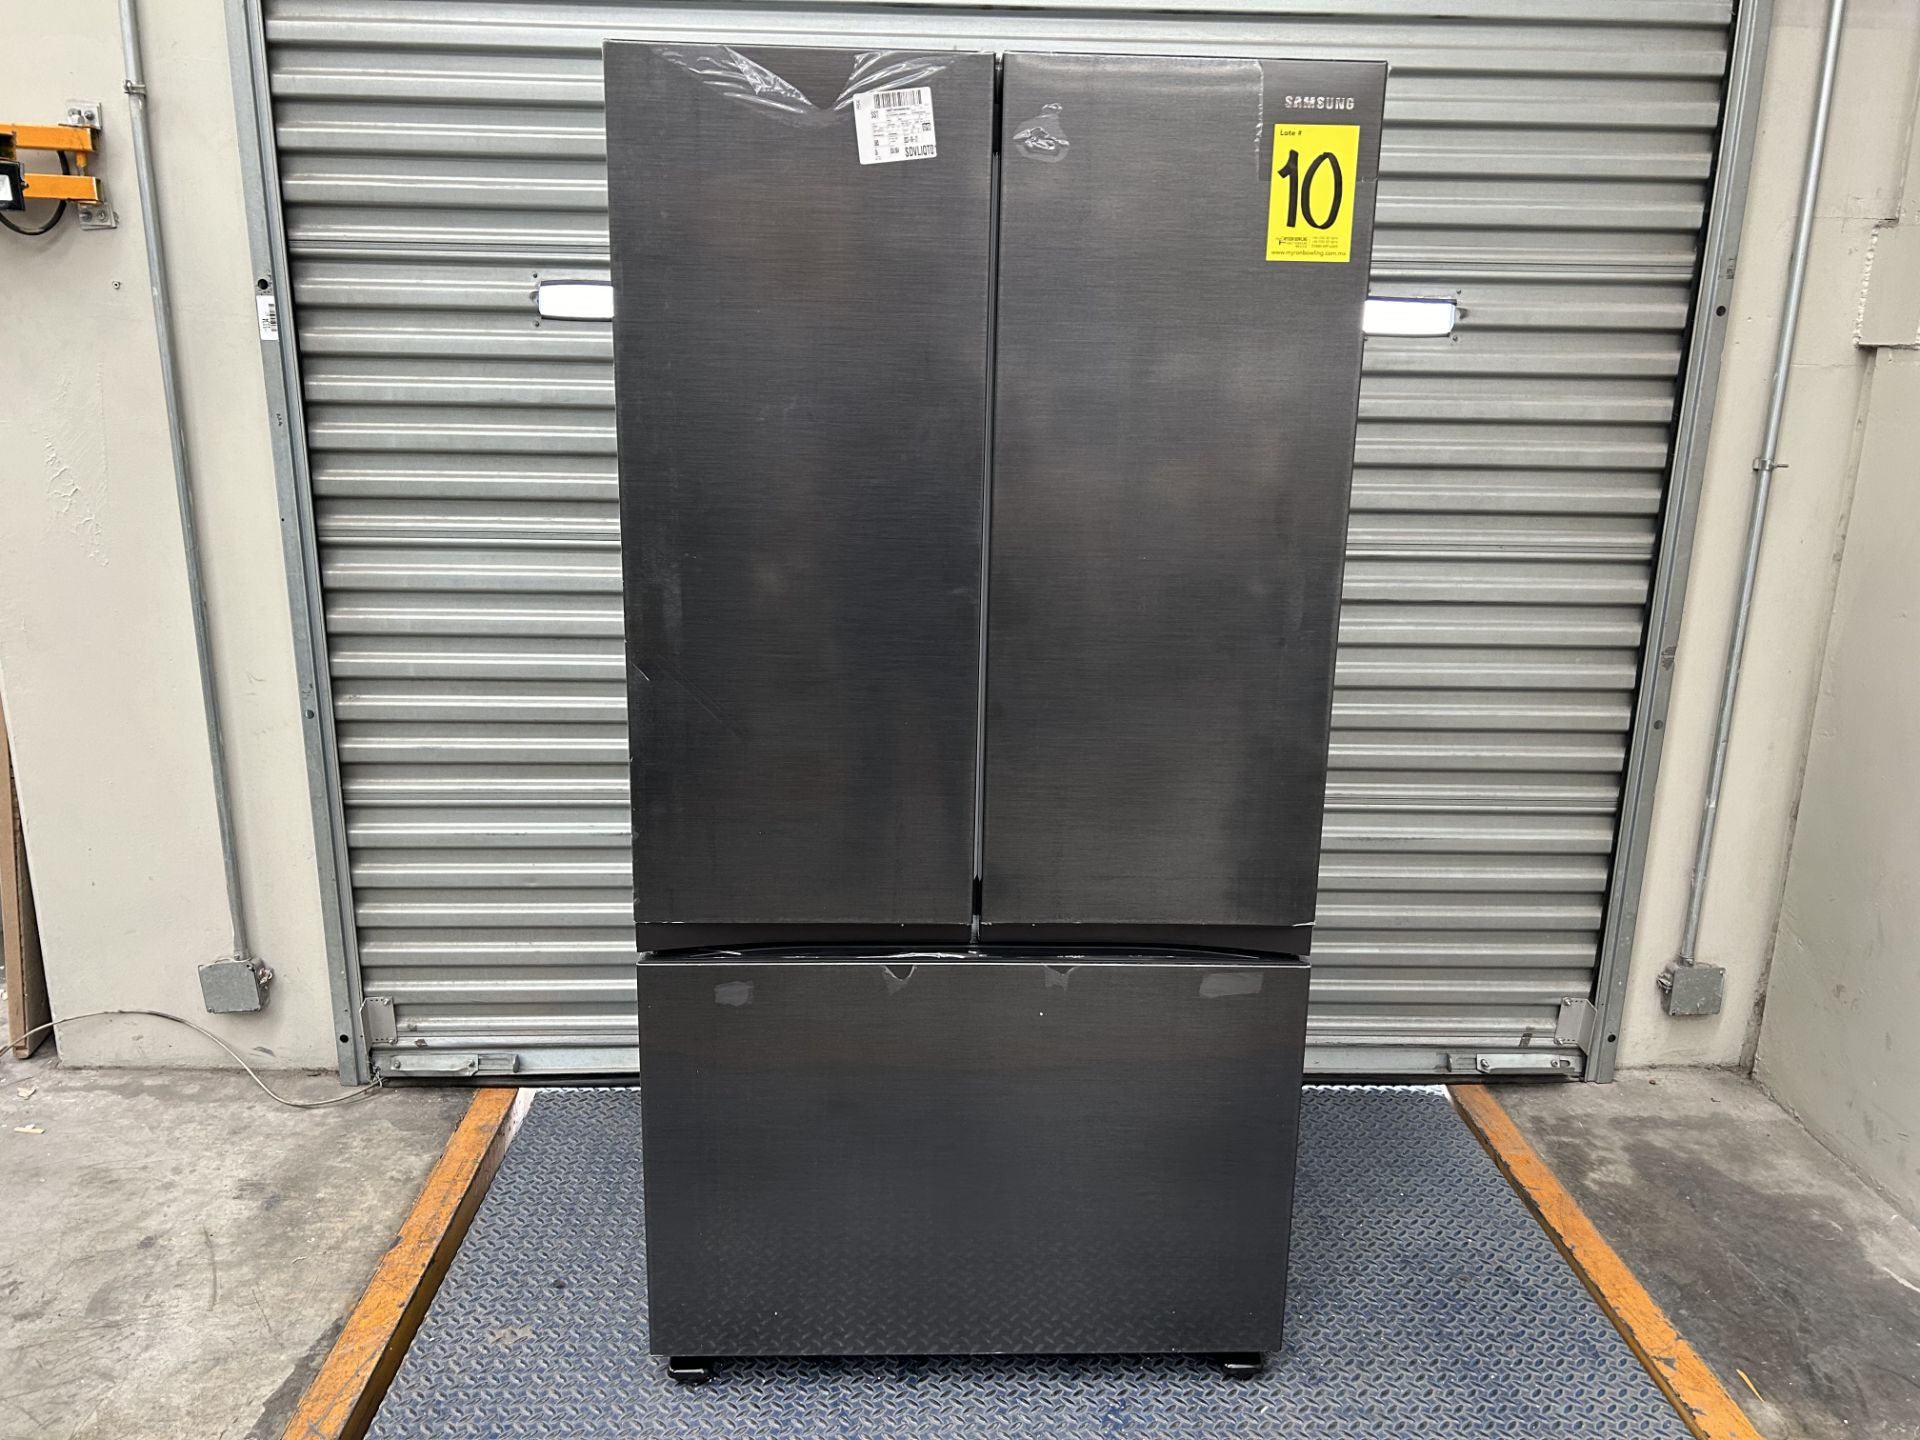 (NUEVO) Lote de 1 Refrigerador Marca SAMSUNG, Modelo RF32CG5N10B1, Serie 00968T, Color GRIS.